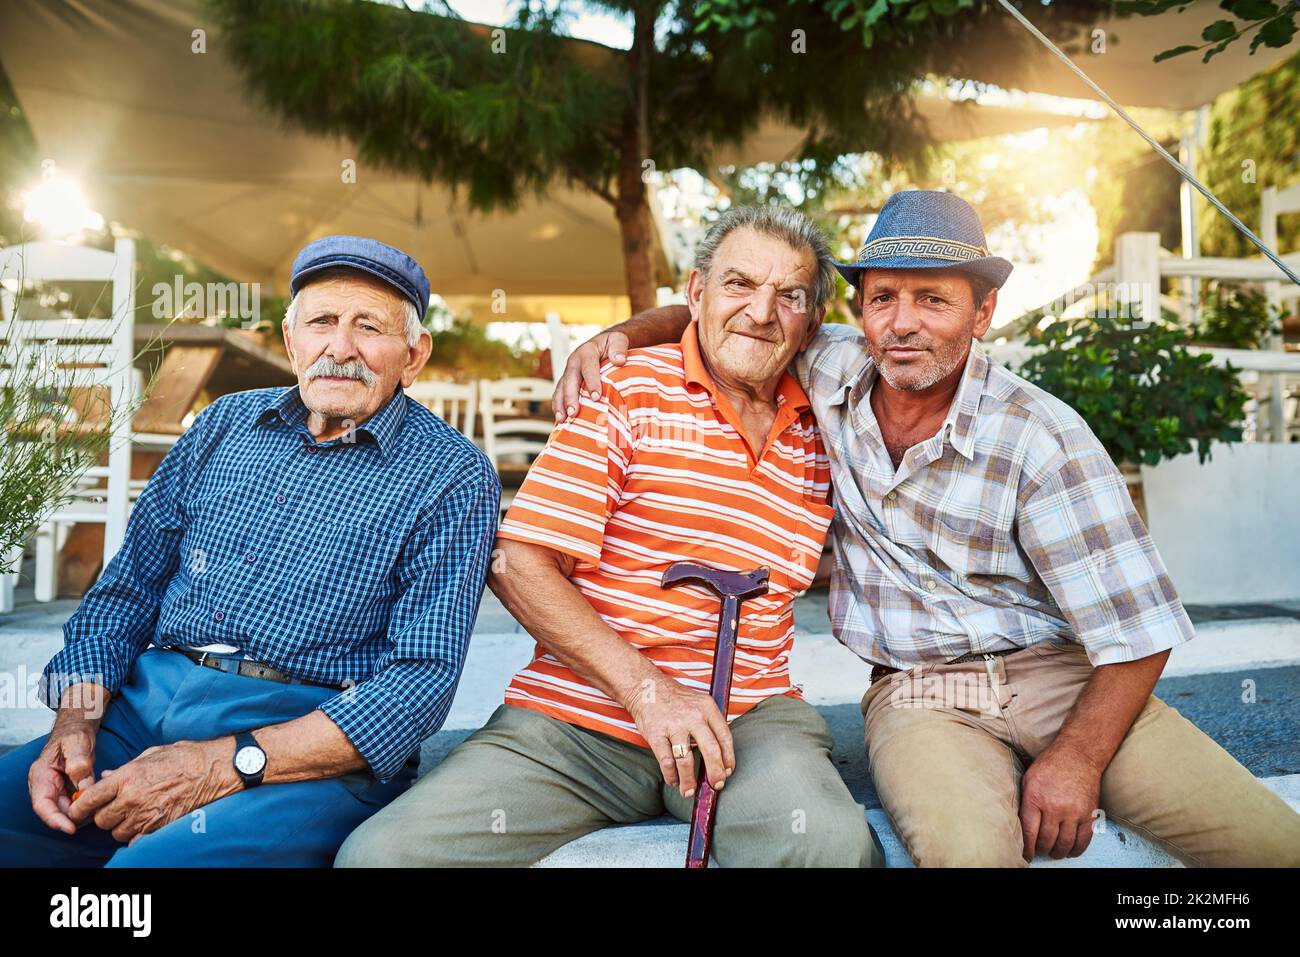 Les ont été amis depuis qu'ils étaient des enfants. Portrait d'un groupe d'hommes âgés joyeux assis ensemble tout en regardant dans l'appareil photo à l'extérieur. Banque D'Images